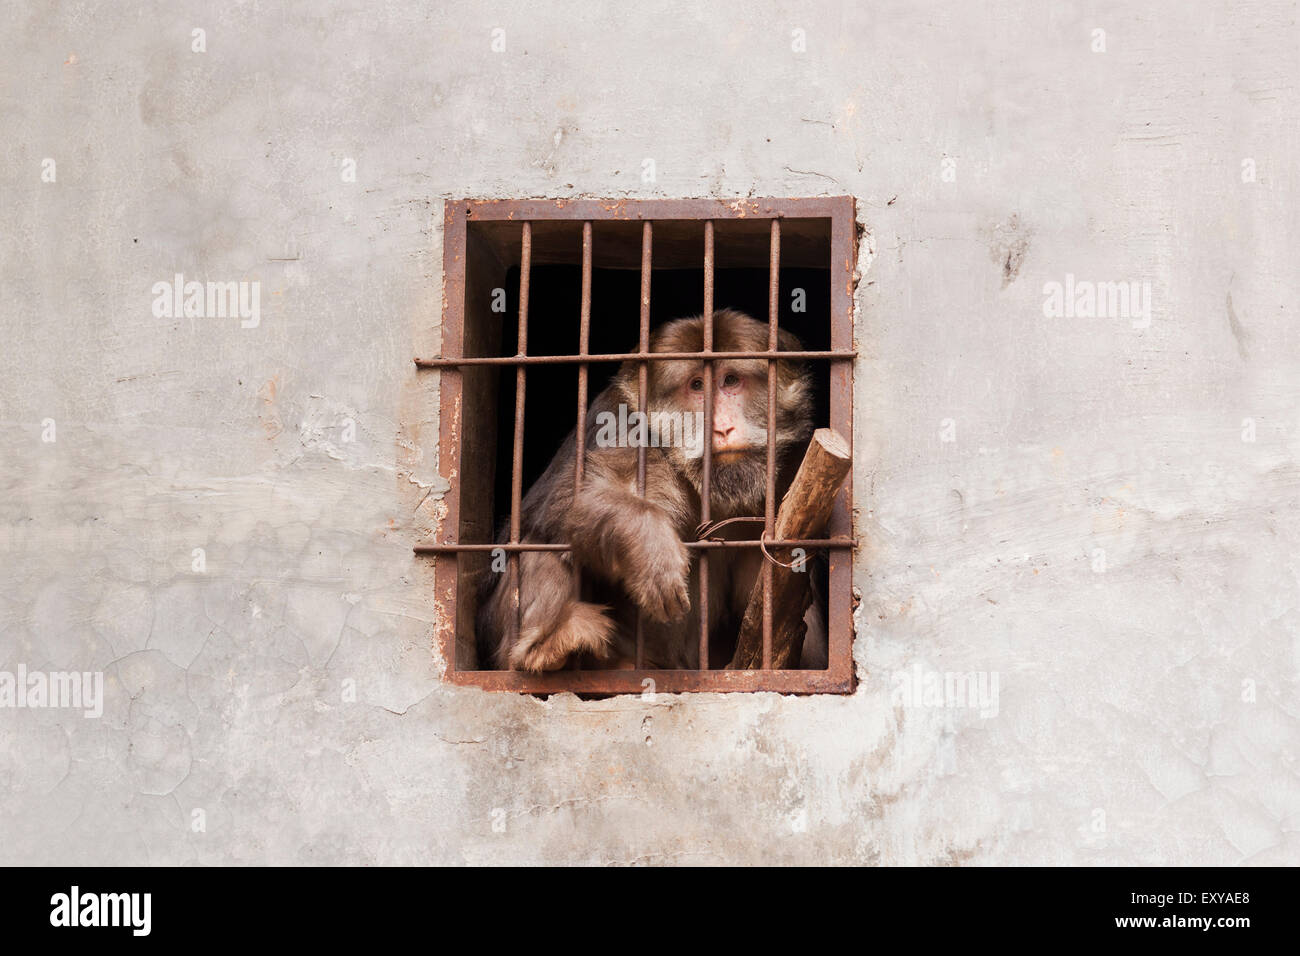 Desesperado mono en una jaula. Foto de stock